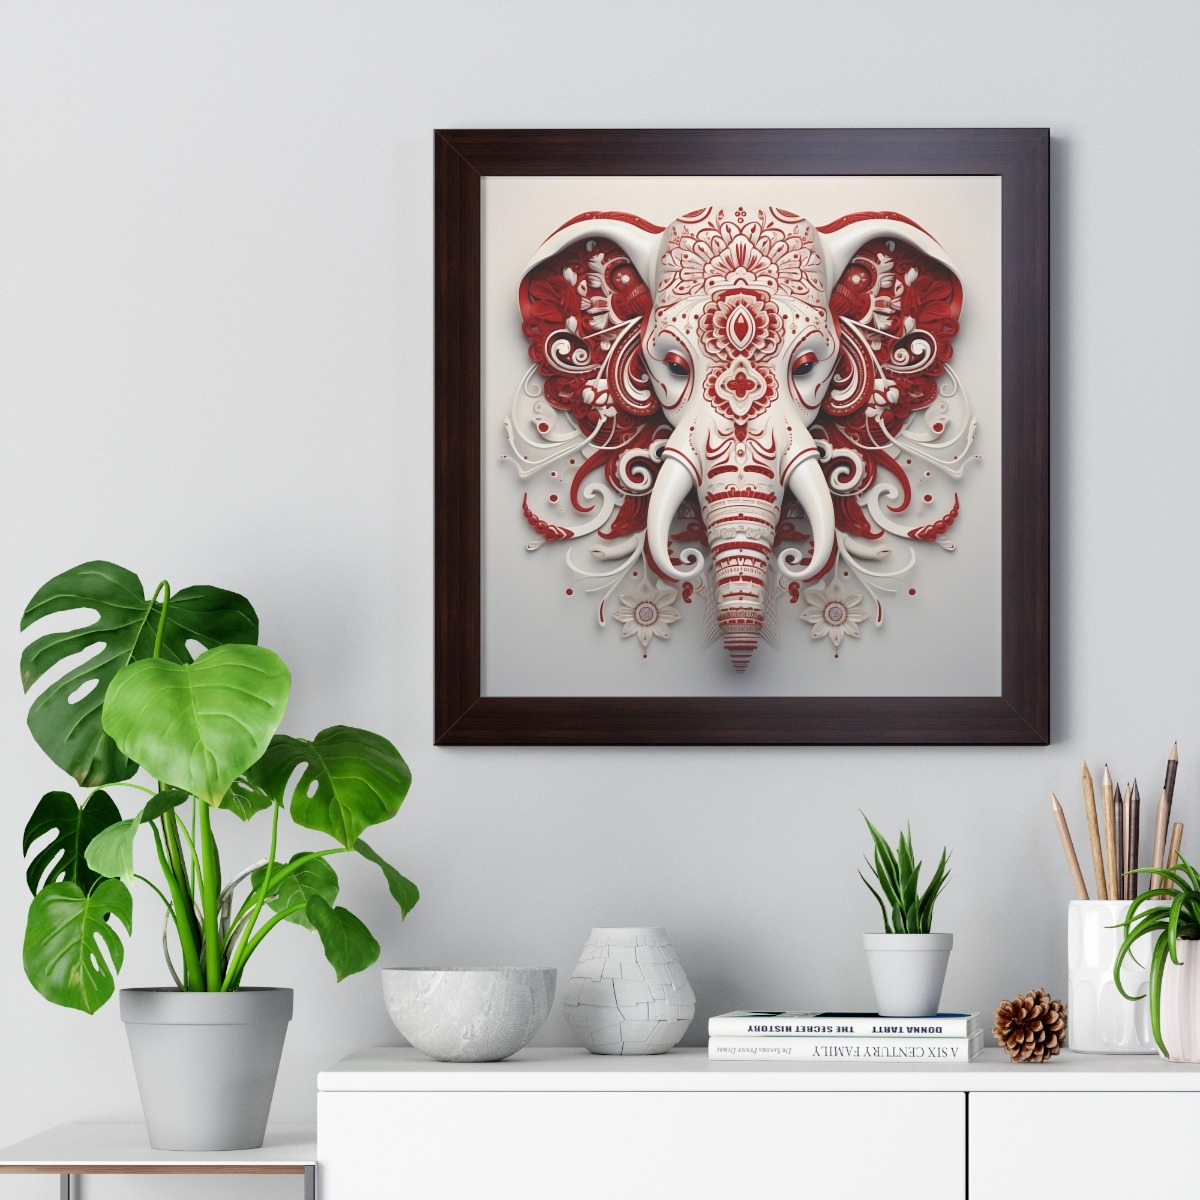 Crimson and White: Paisley Elephant Logo on White Framed Vertical Poster